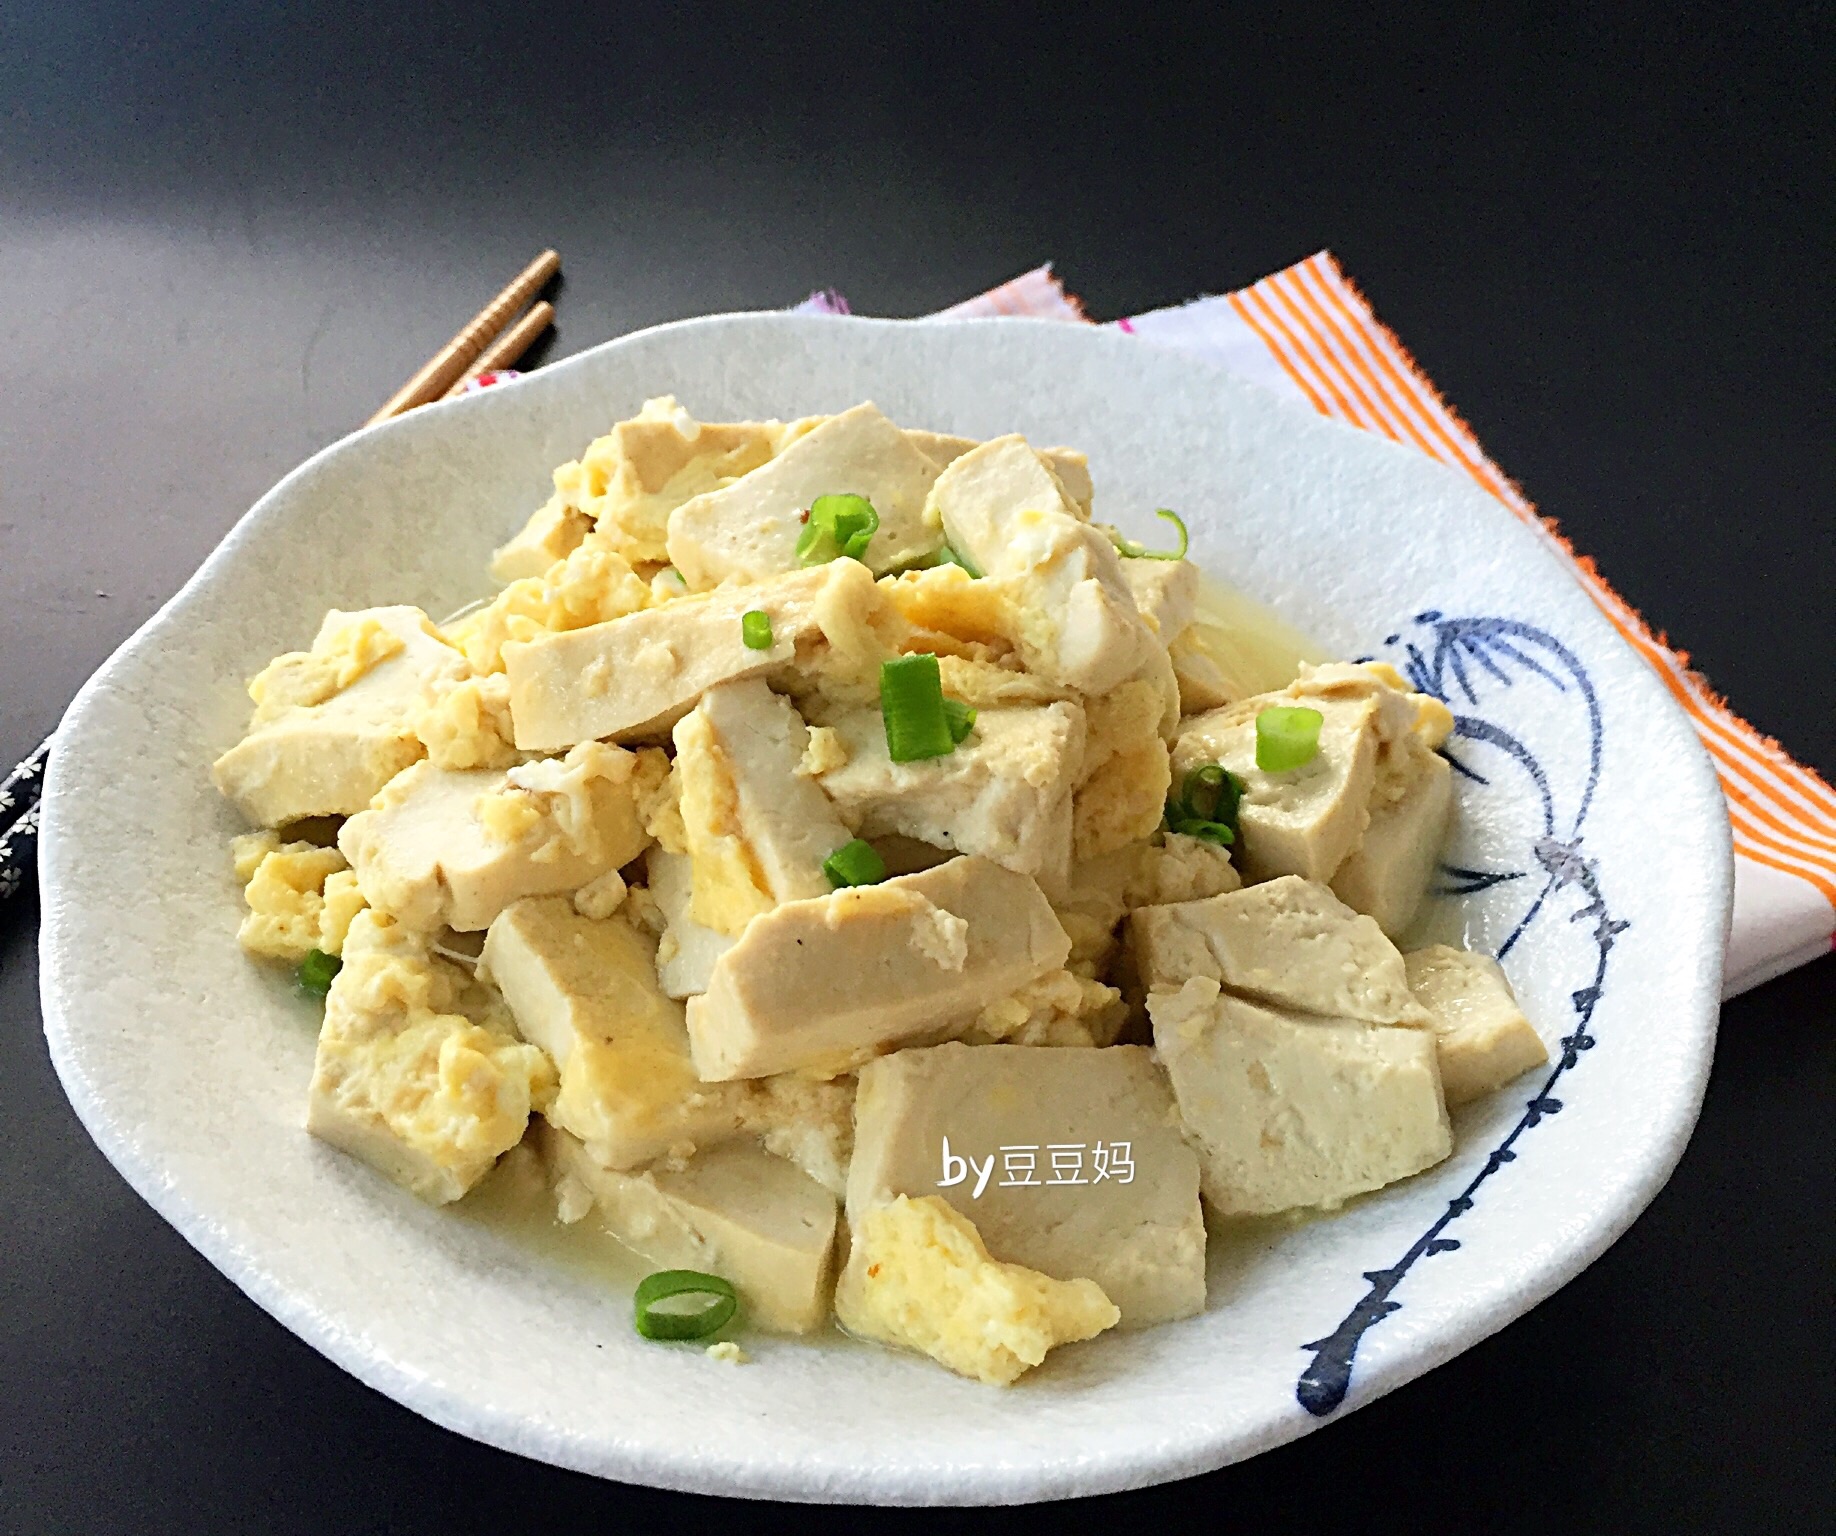 我的廚房新花樣 發表的 家常豆腐炒蛋 食譜 - Cookpad